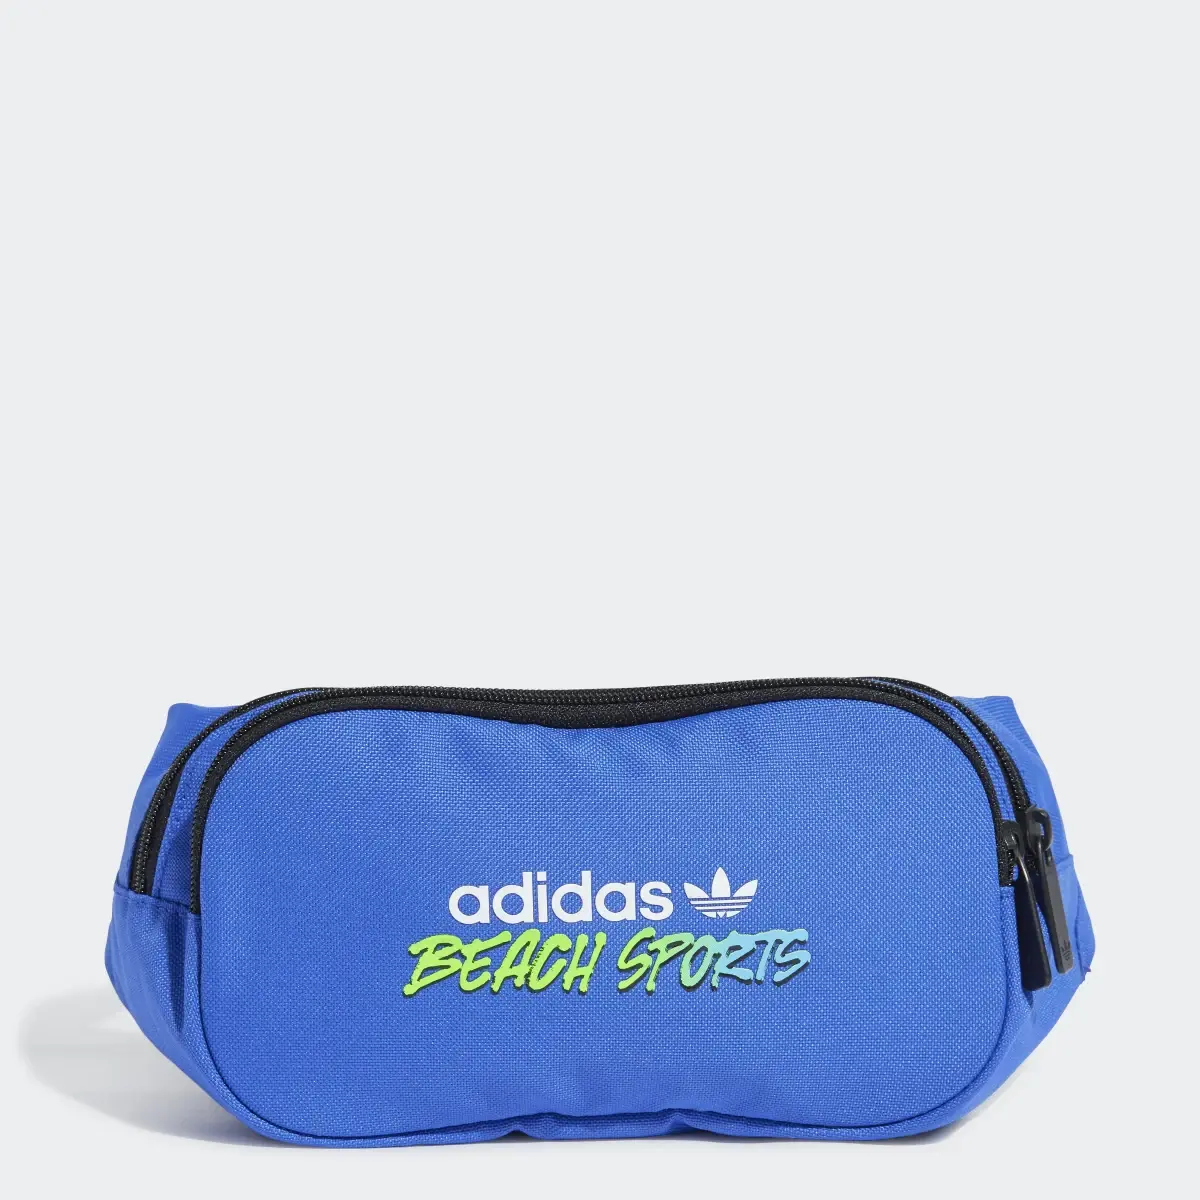 Adidas Beach Sports Waist Bag. 1